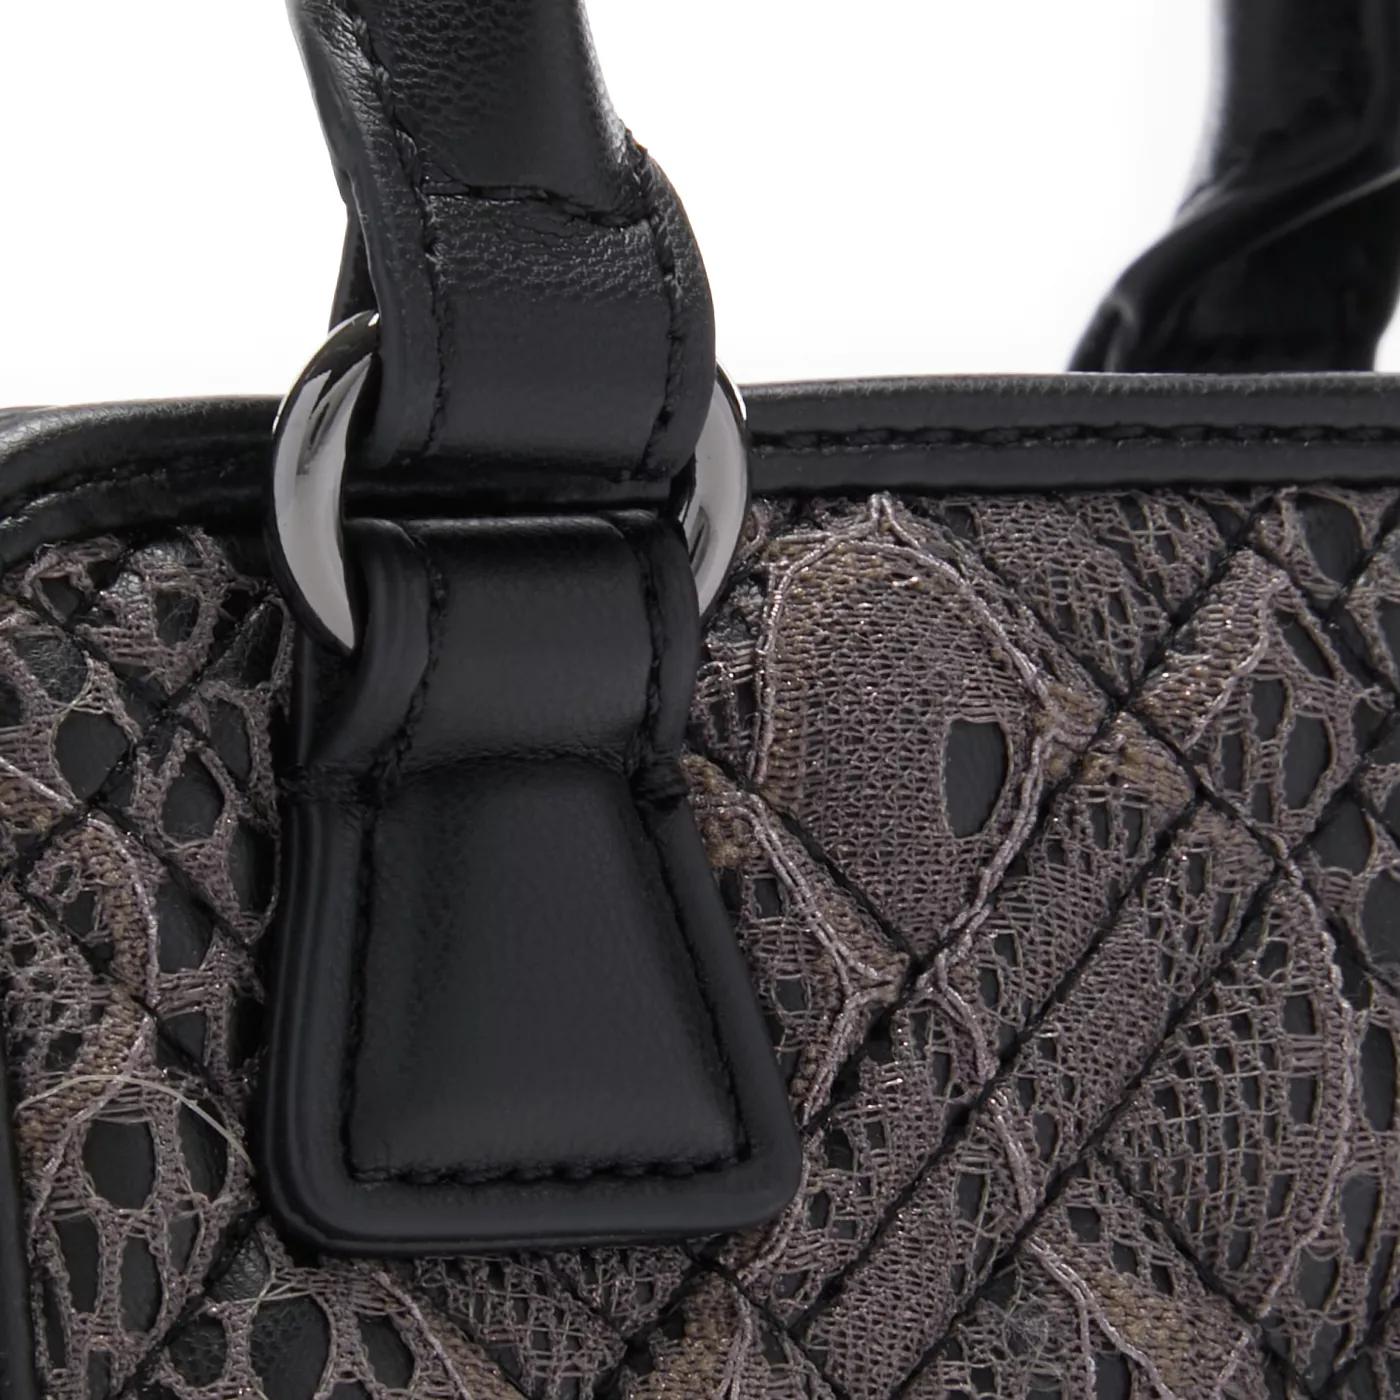 Love Moschino Crossbody bags Quilted Bag Schwarze Handtasche JC40 in zwart